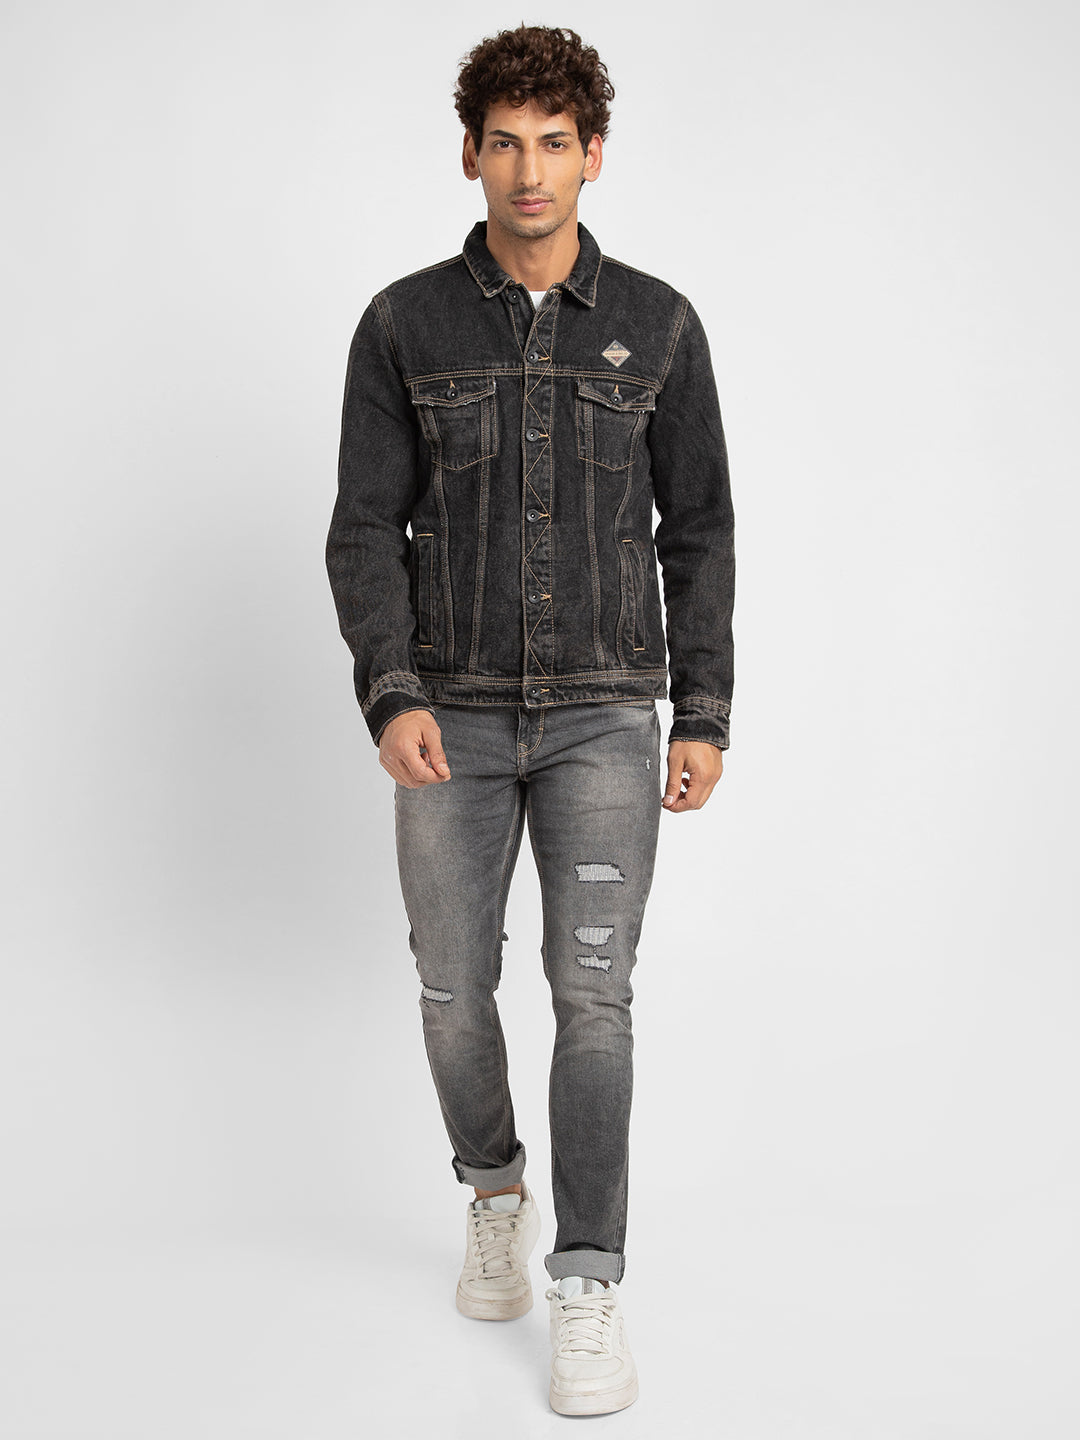 Black Jeans With Light Denim Jacket | Jeans outfit men, Black denim jacket  outfit, Jean jacket outfits men